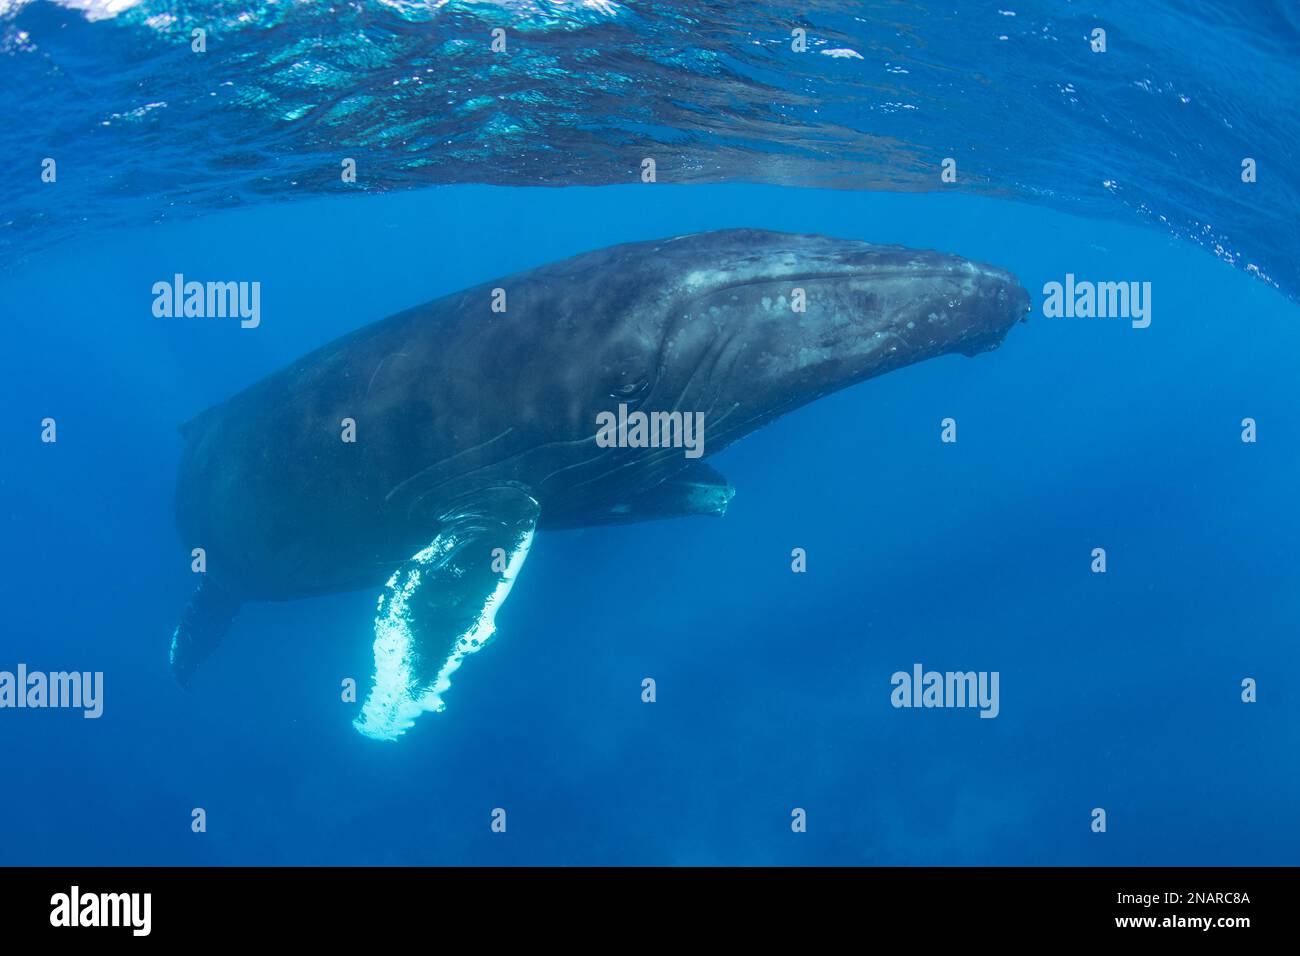 La ballena jorobada (Megaptera novaeangliae) puede alcanzar longitudes de 12-16 metros. En el Atlántico, las hembras dan a luz en el cálido mar Caribe. Foto de stock